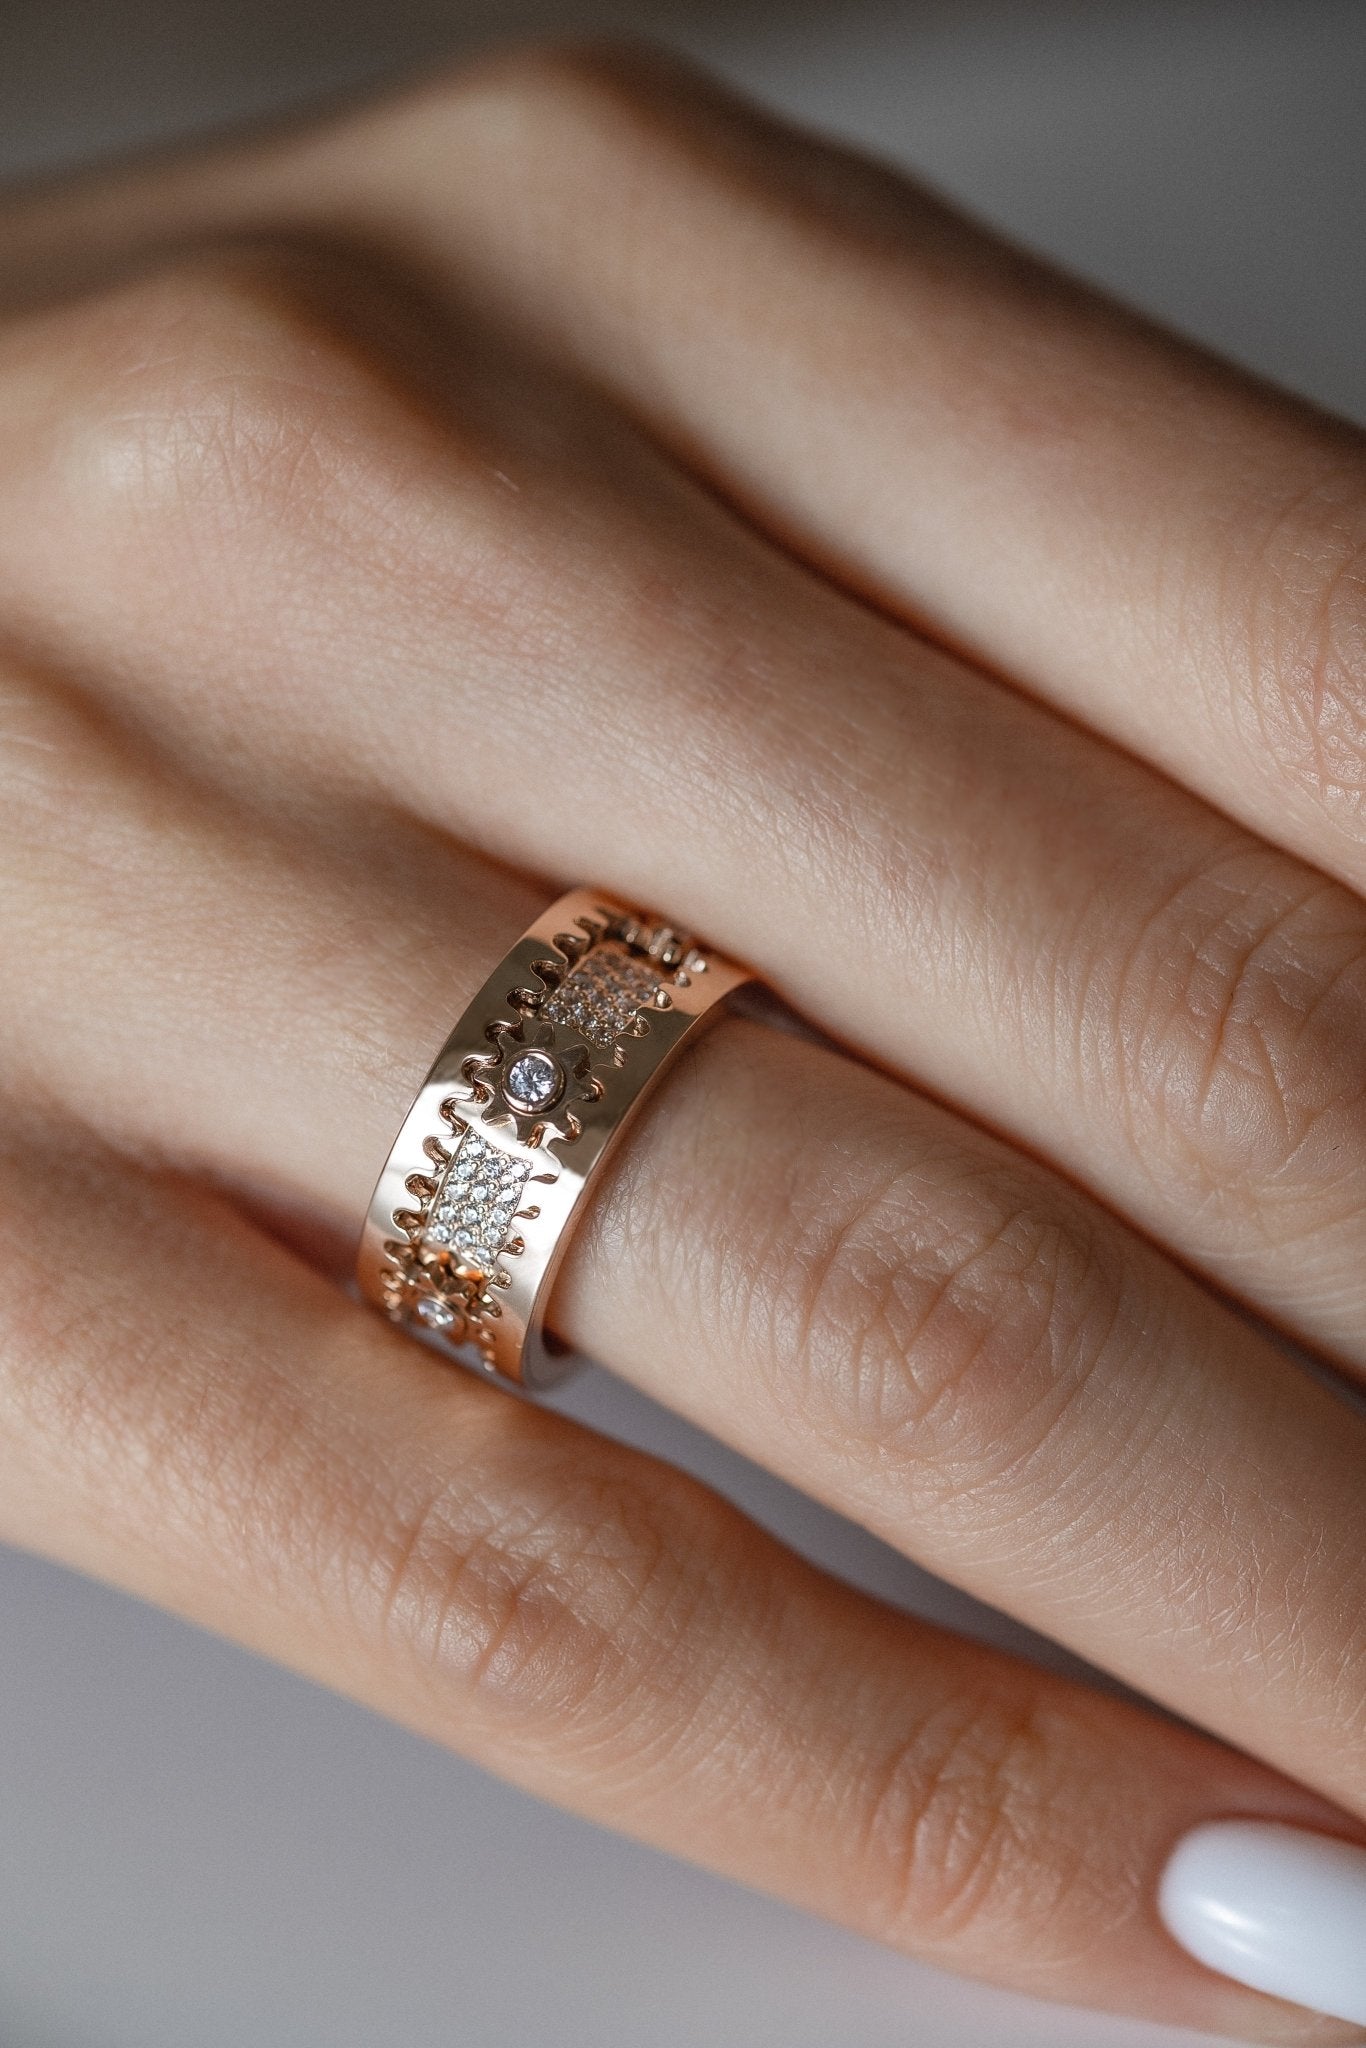 Unique gold spinner ring - escorialjewelry